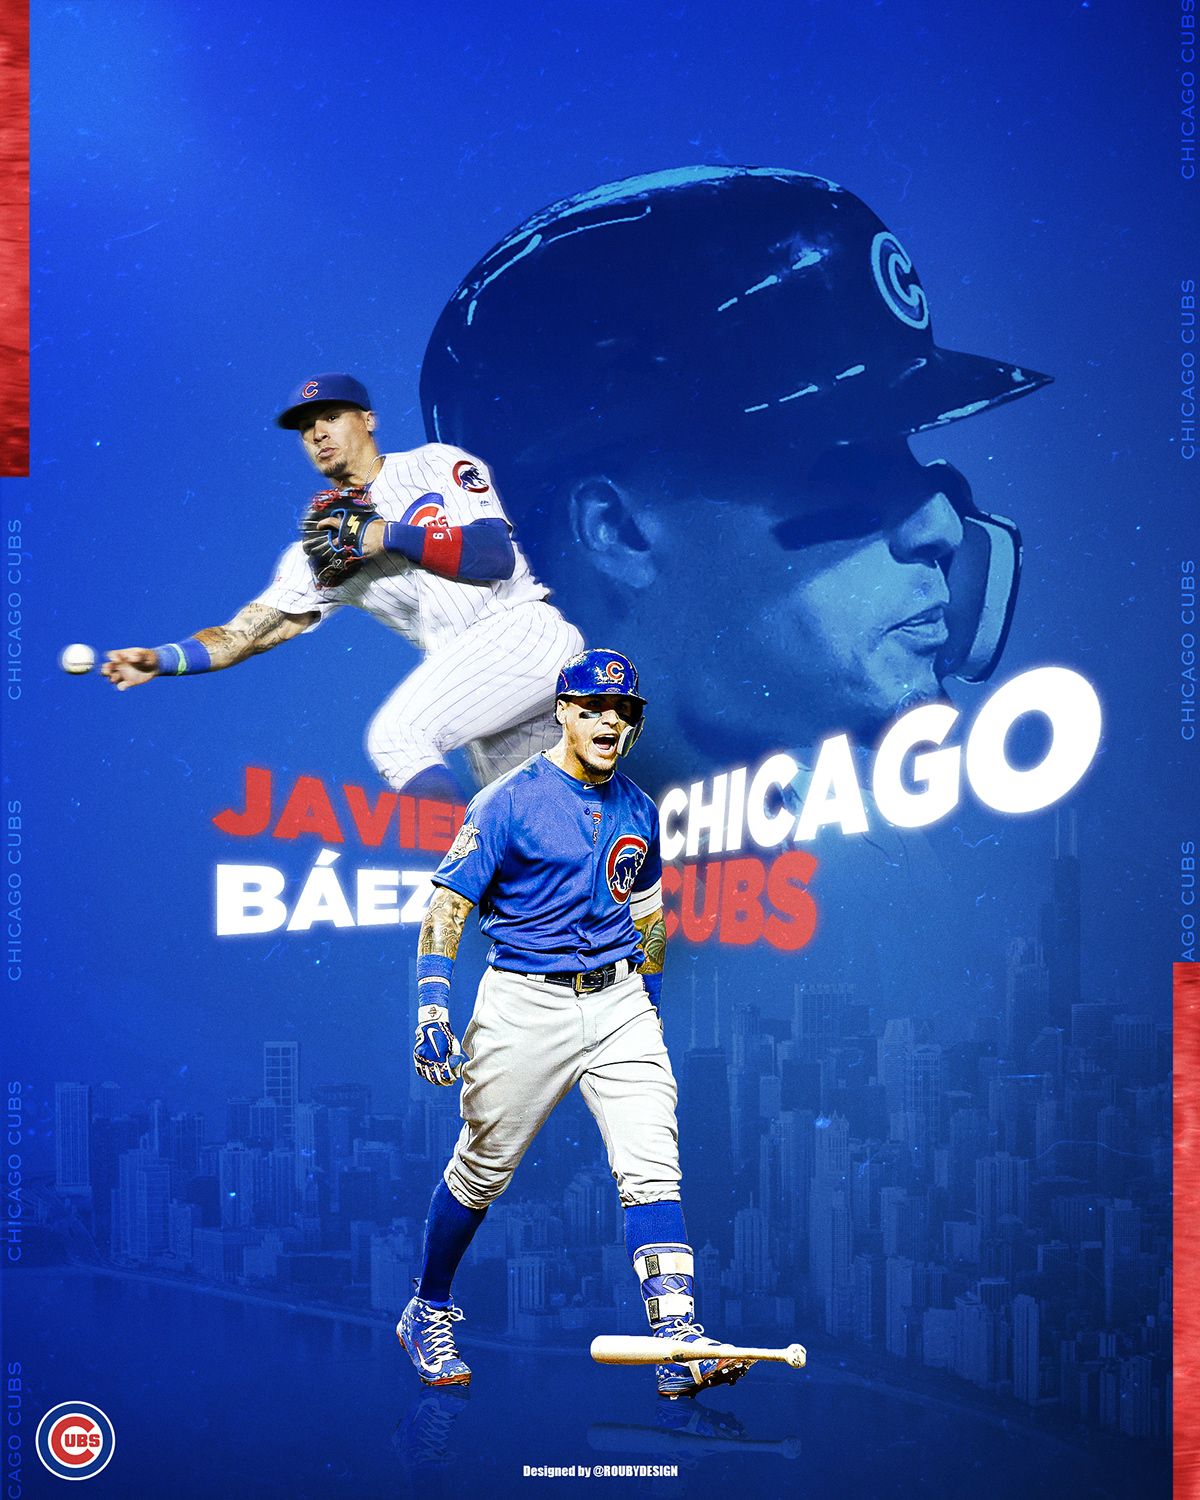 Javier Báez // Chicago Cubs. Chicago cubs wallpaper, Chicago cubs baseball, Chicago cubs